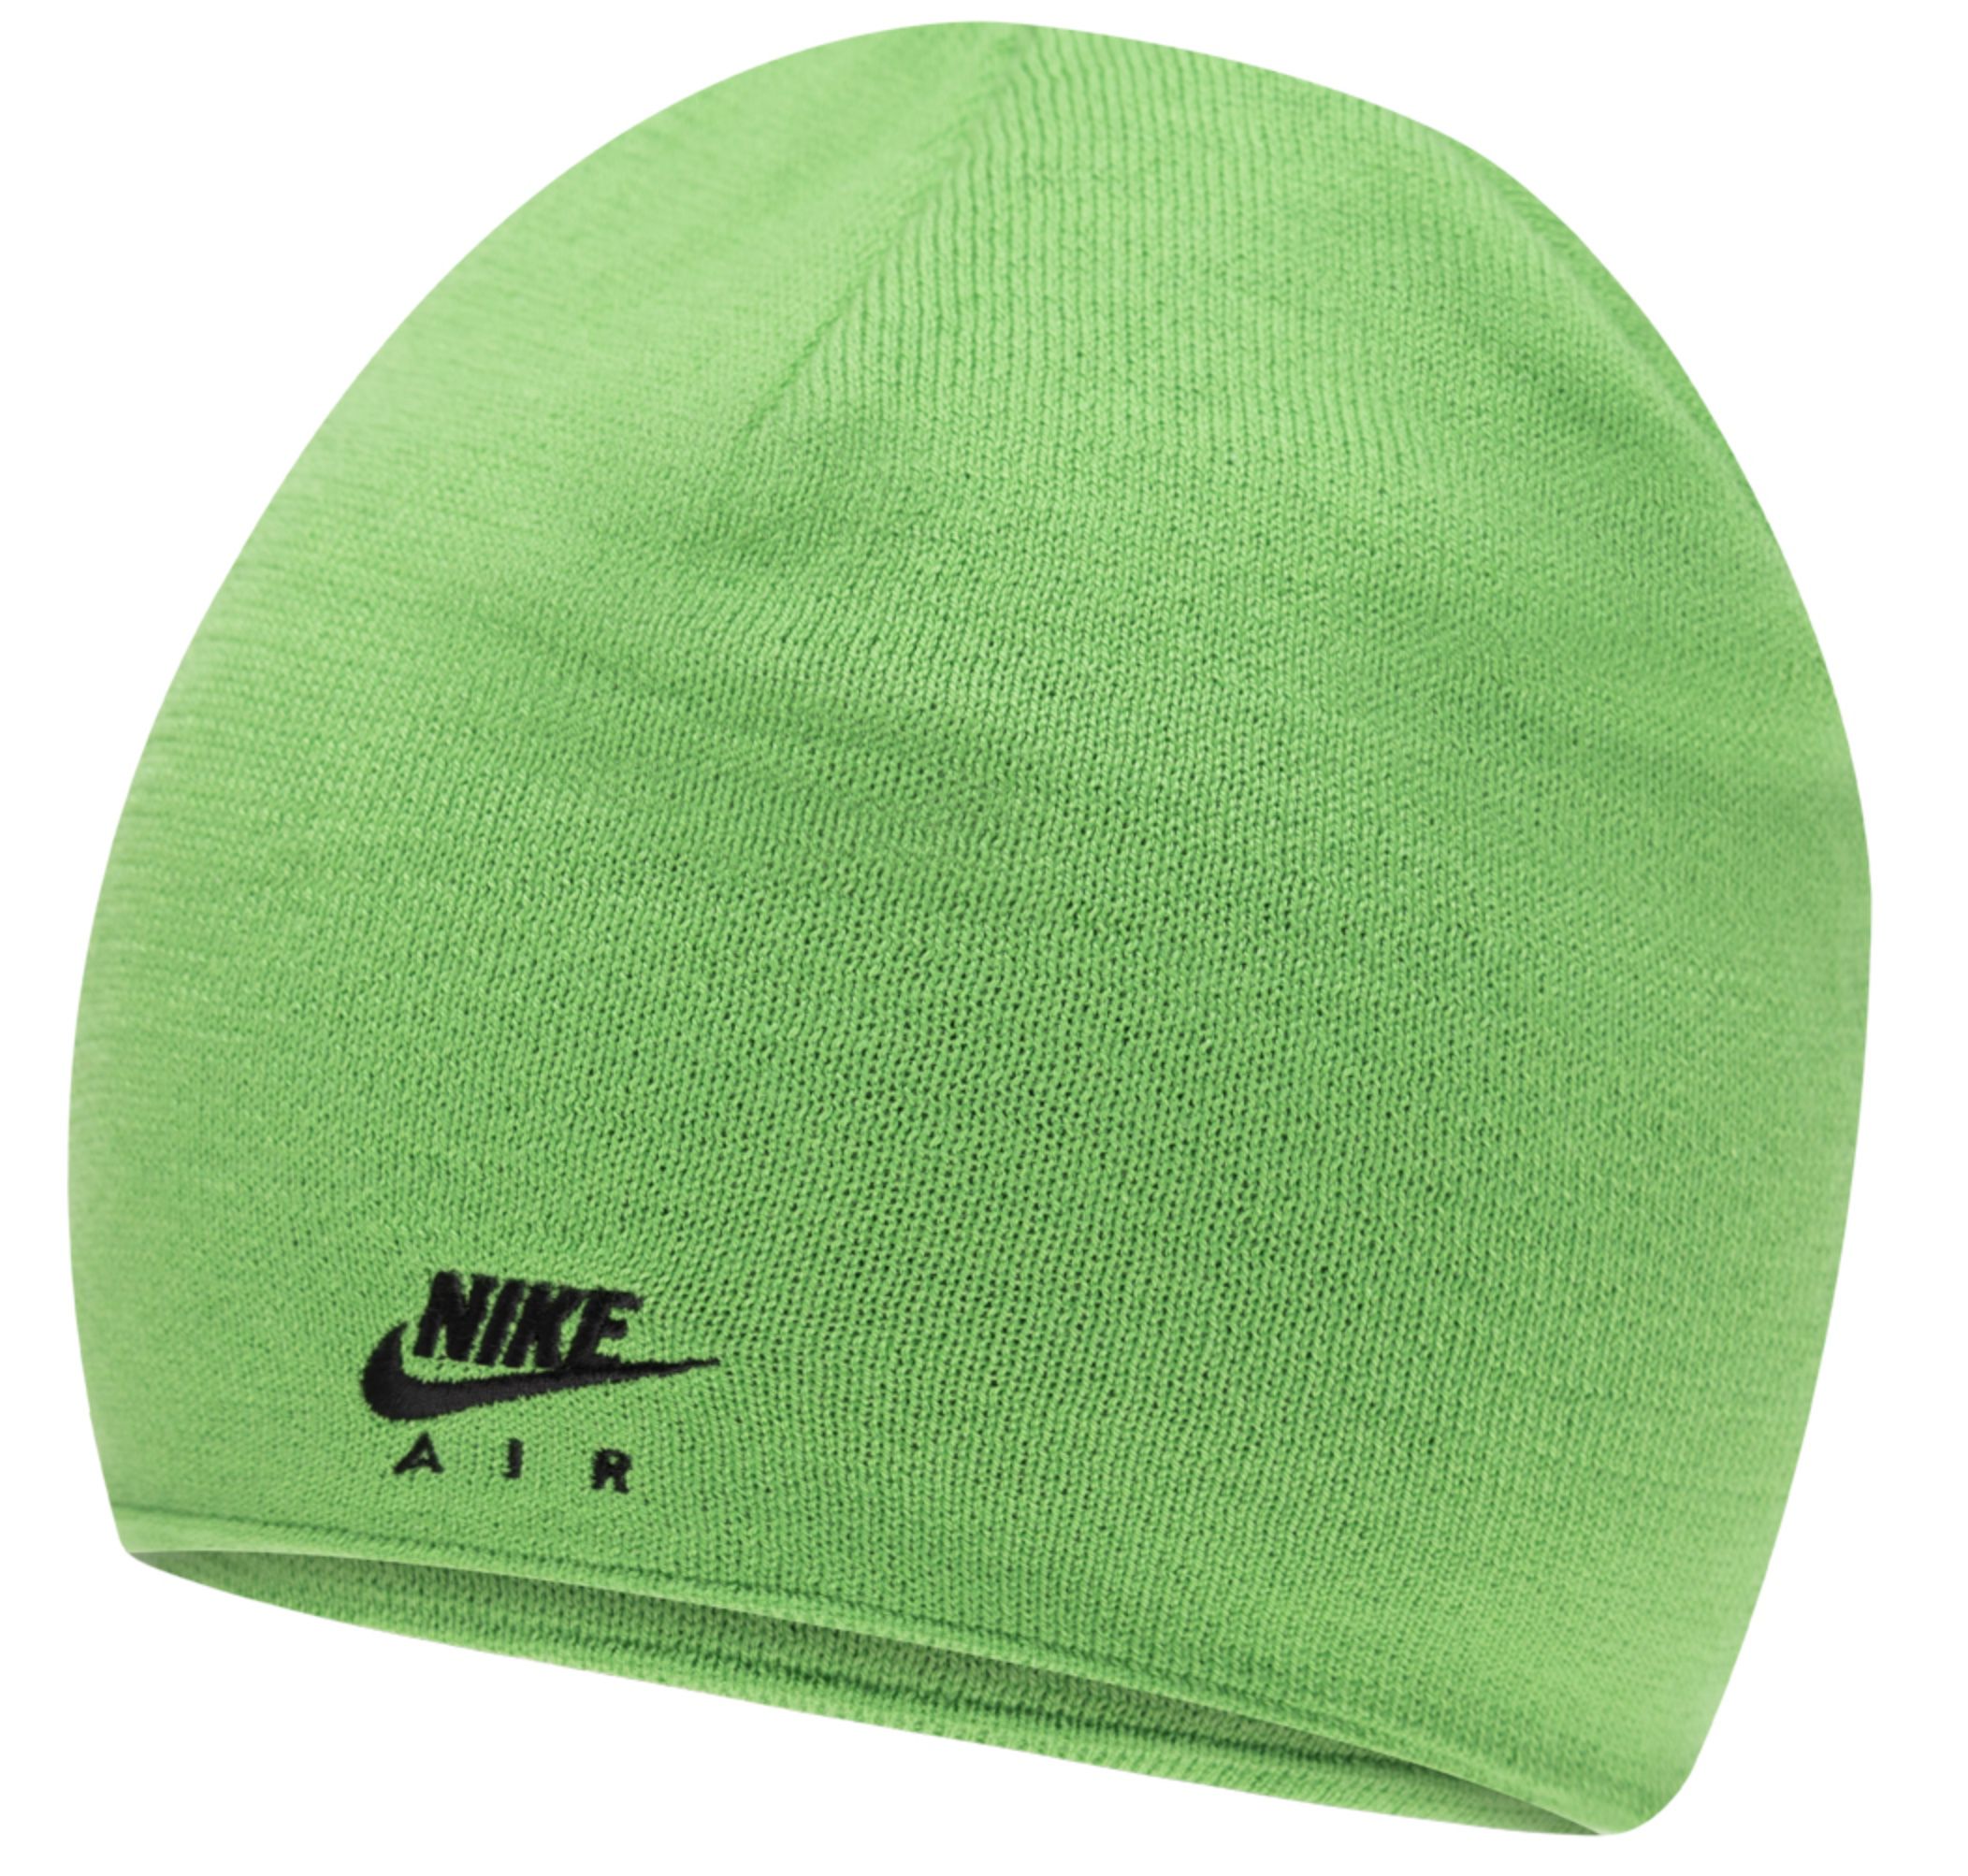 Nike AIR Unlimited Beanie Herren Wintermütze in Grün für 4,99€ (statt 9€)